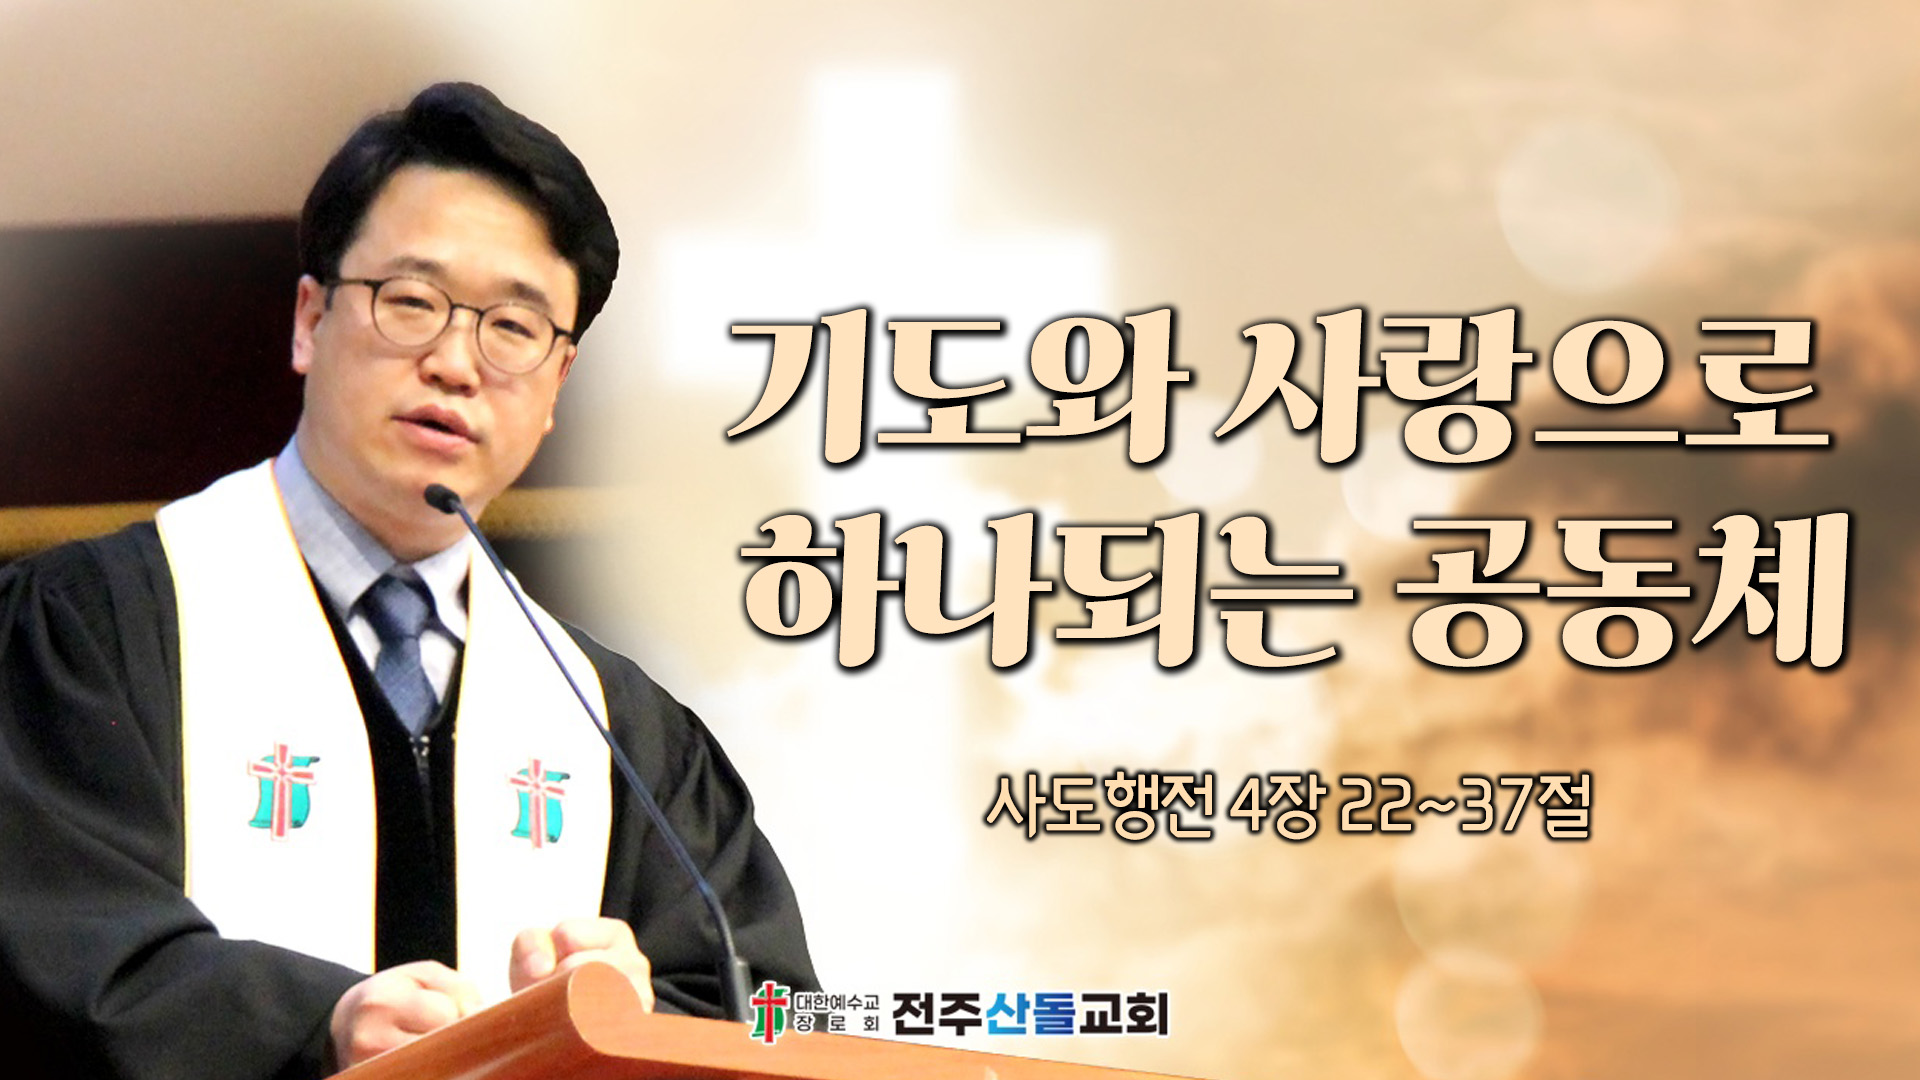 기도와 사랑으로 하나되는 공동체┃전주산돌교회 김진영 목사	